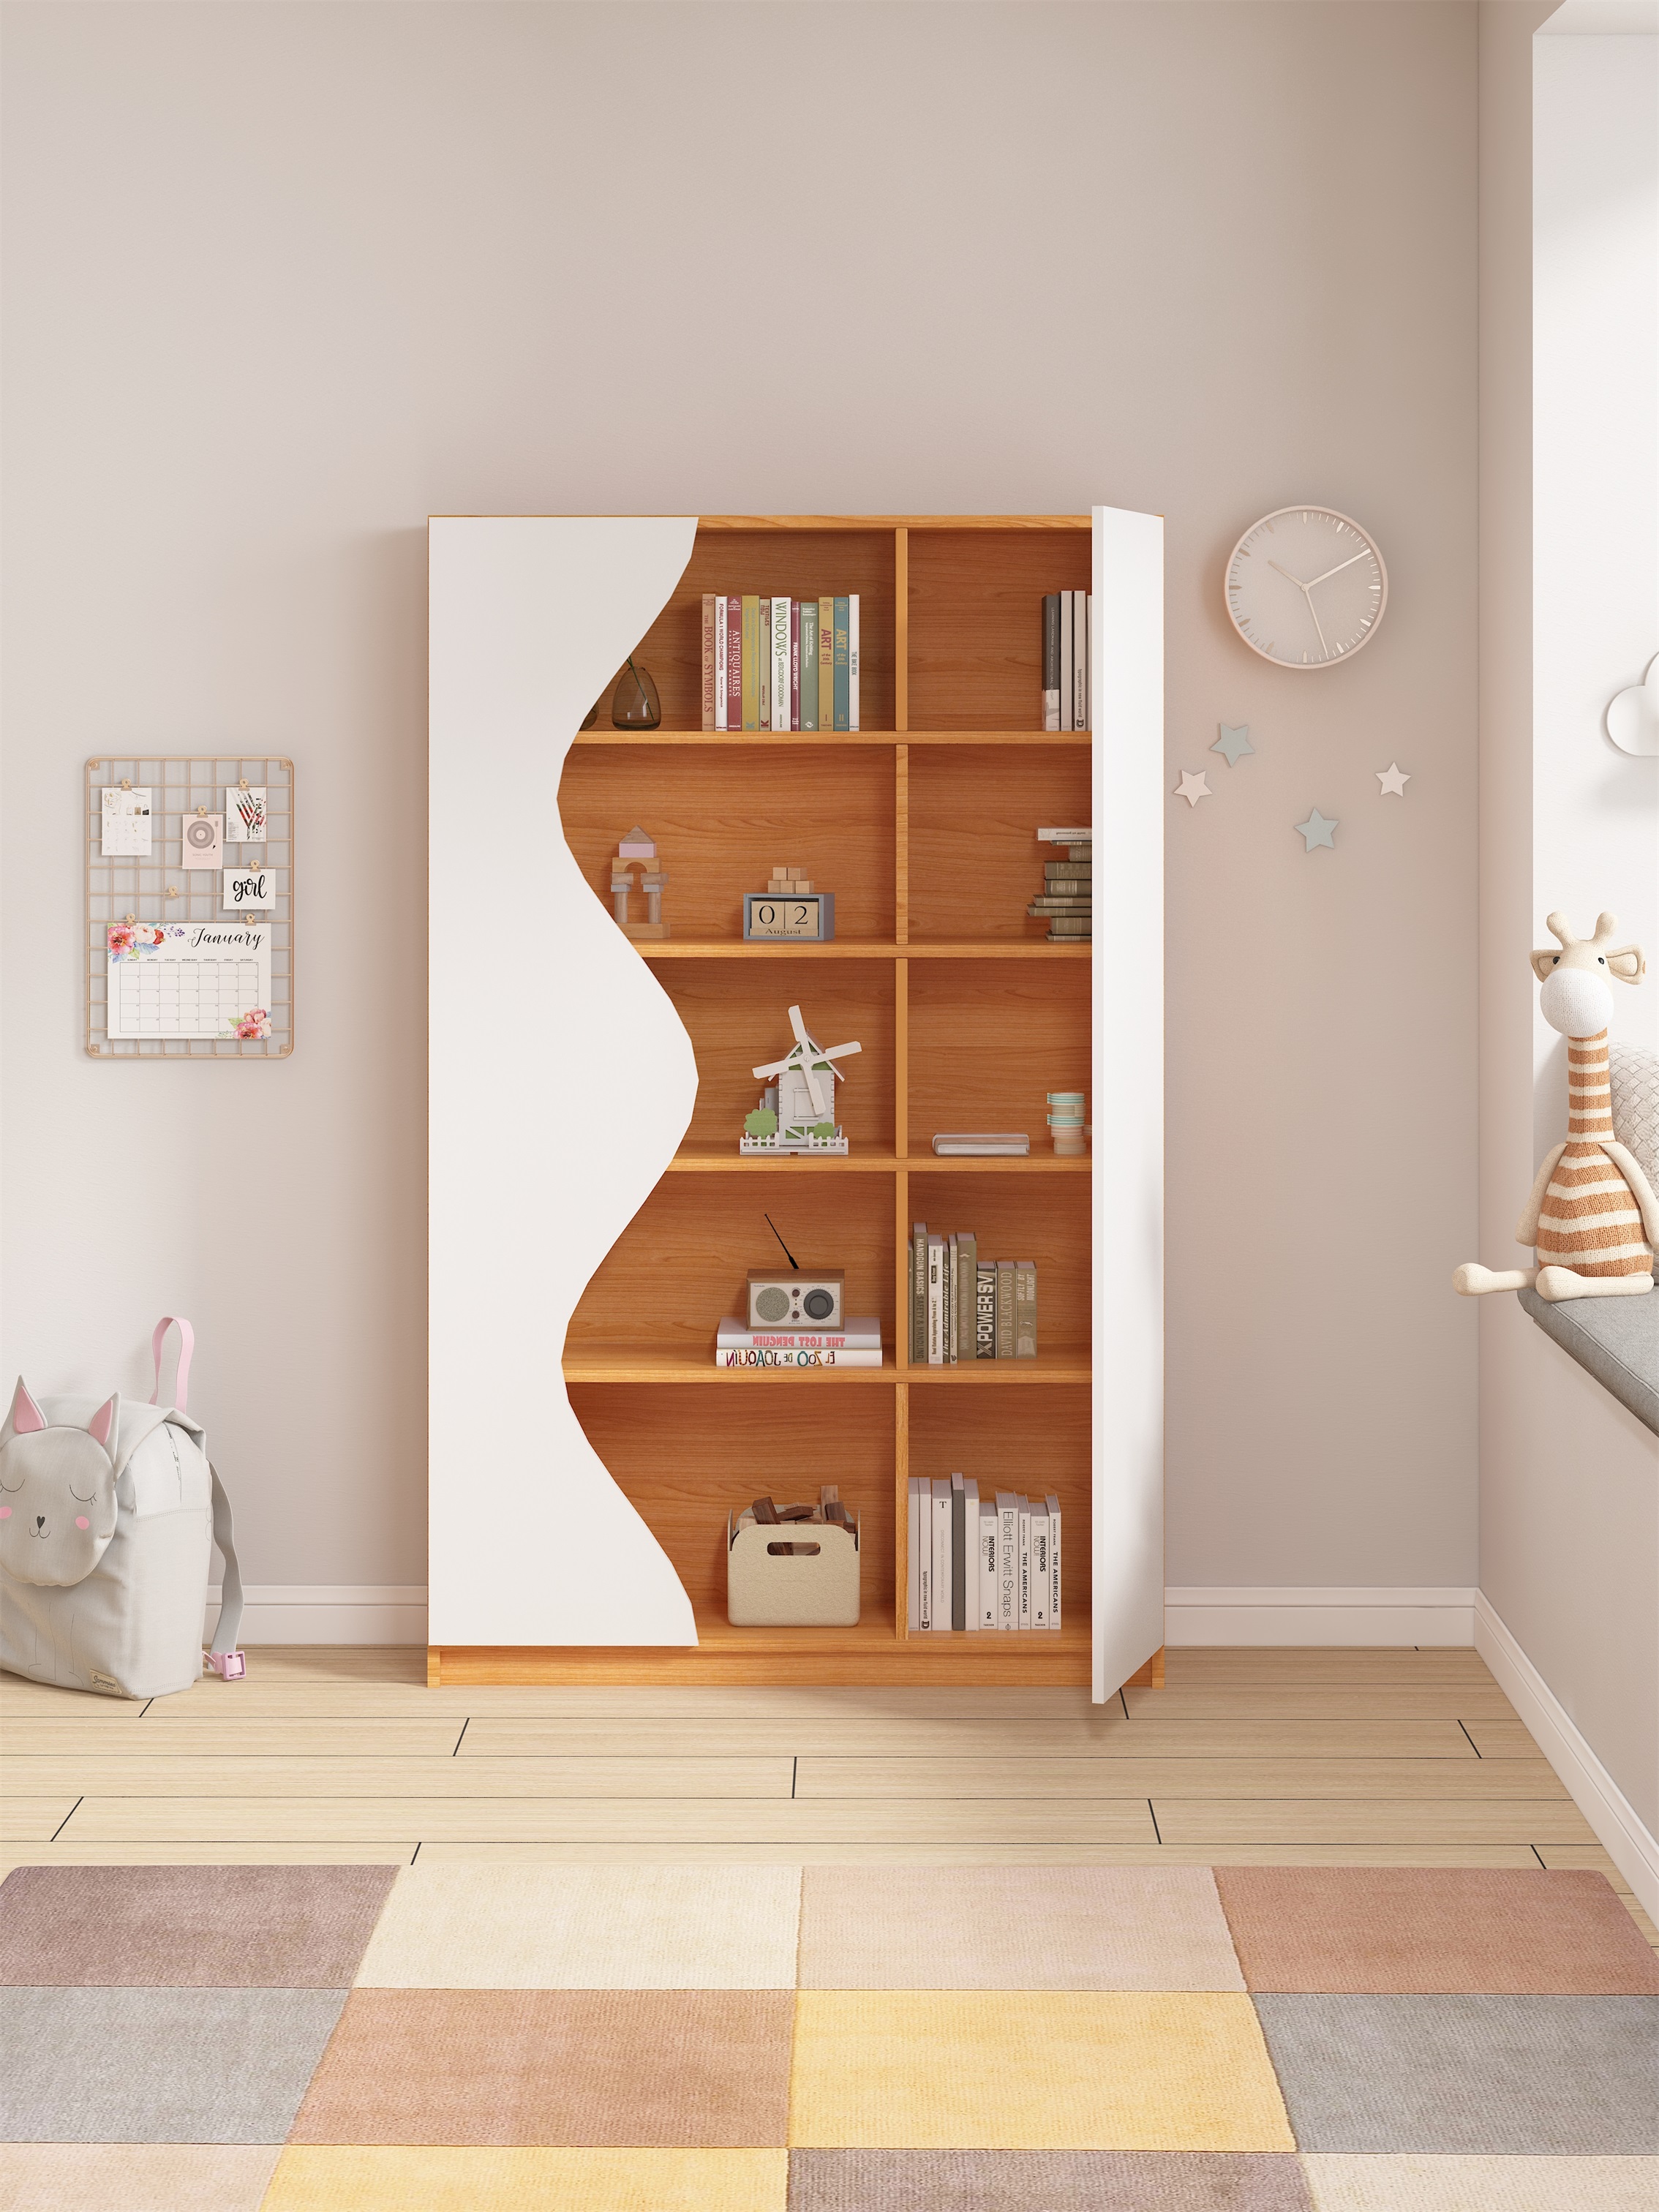 可比熊enf兒童書櫃帶門拱形儲物櫃展示櫃家用客廳書架寶寶收納櫃 (8.1折)